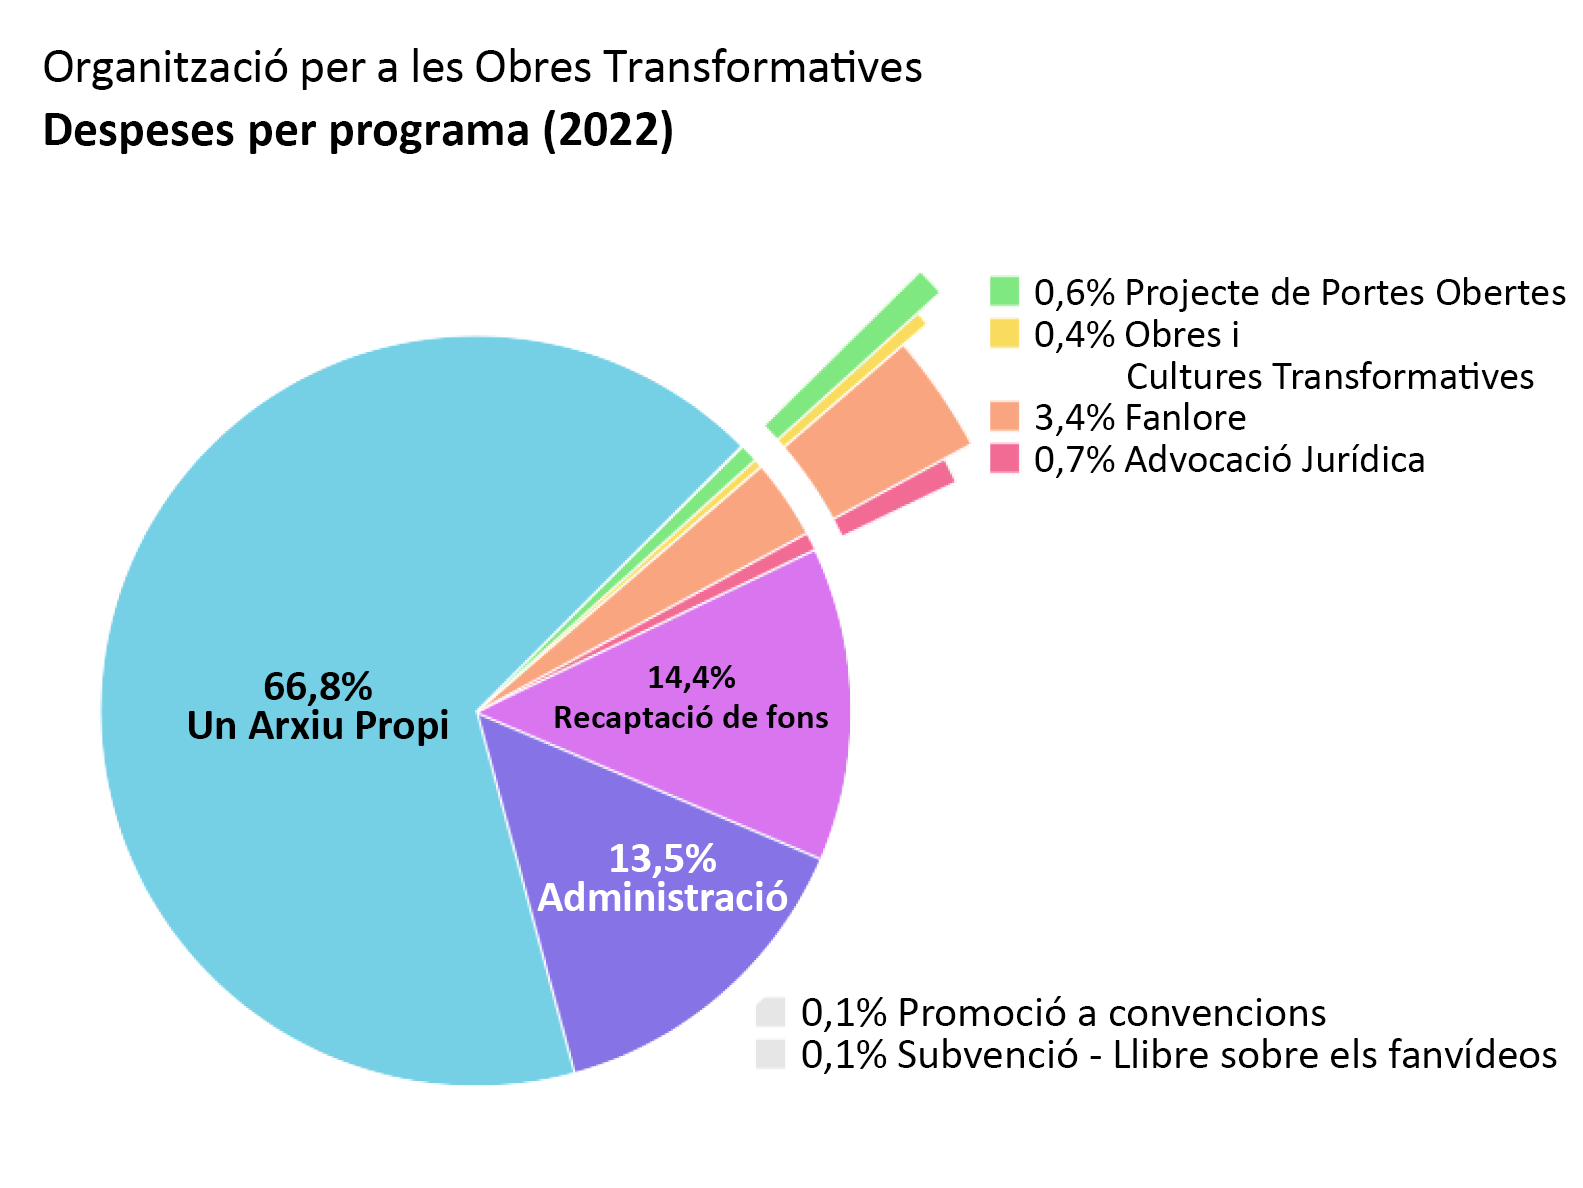 Despeses per programa: Archive of Our Own: 66,8%. Open Doors: 0,6%. Obres i Cultures Transformatives: 0,4%. Fanlore: 3,4%. Advocació Jurídica: 0,7%. Promoció a convencions: 0,1%. Subvenció - Llibre sobre els fanvídeos: 0,1%. Administració: 13,5%. Recaptació de fons: 14,4%.